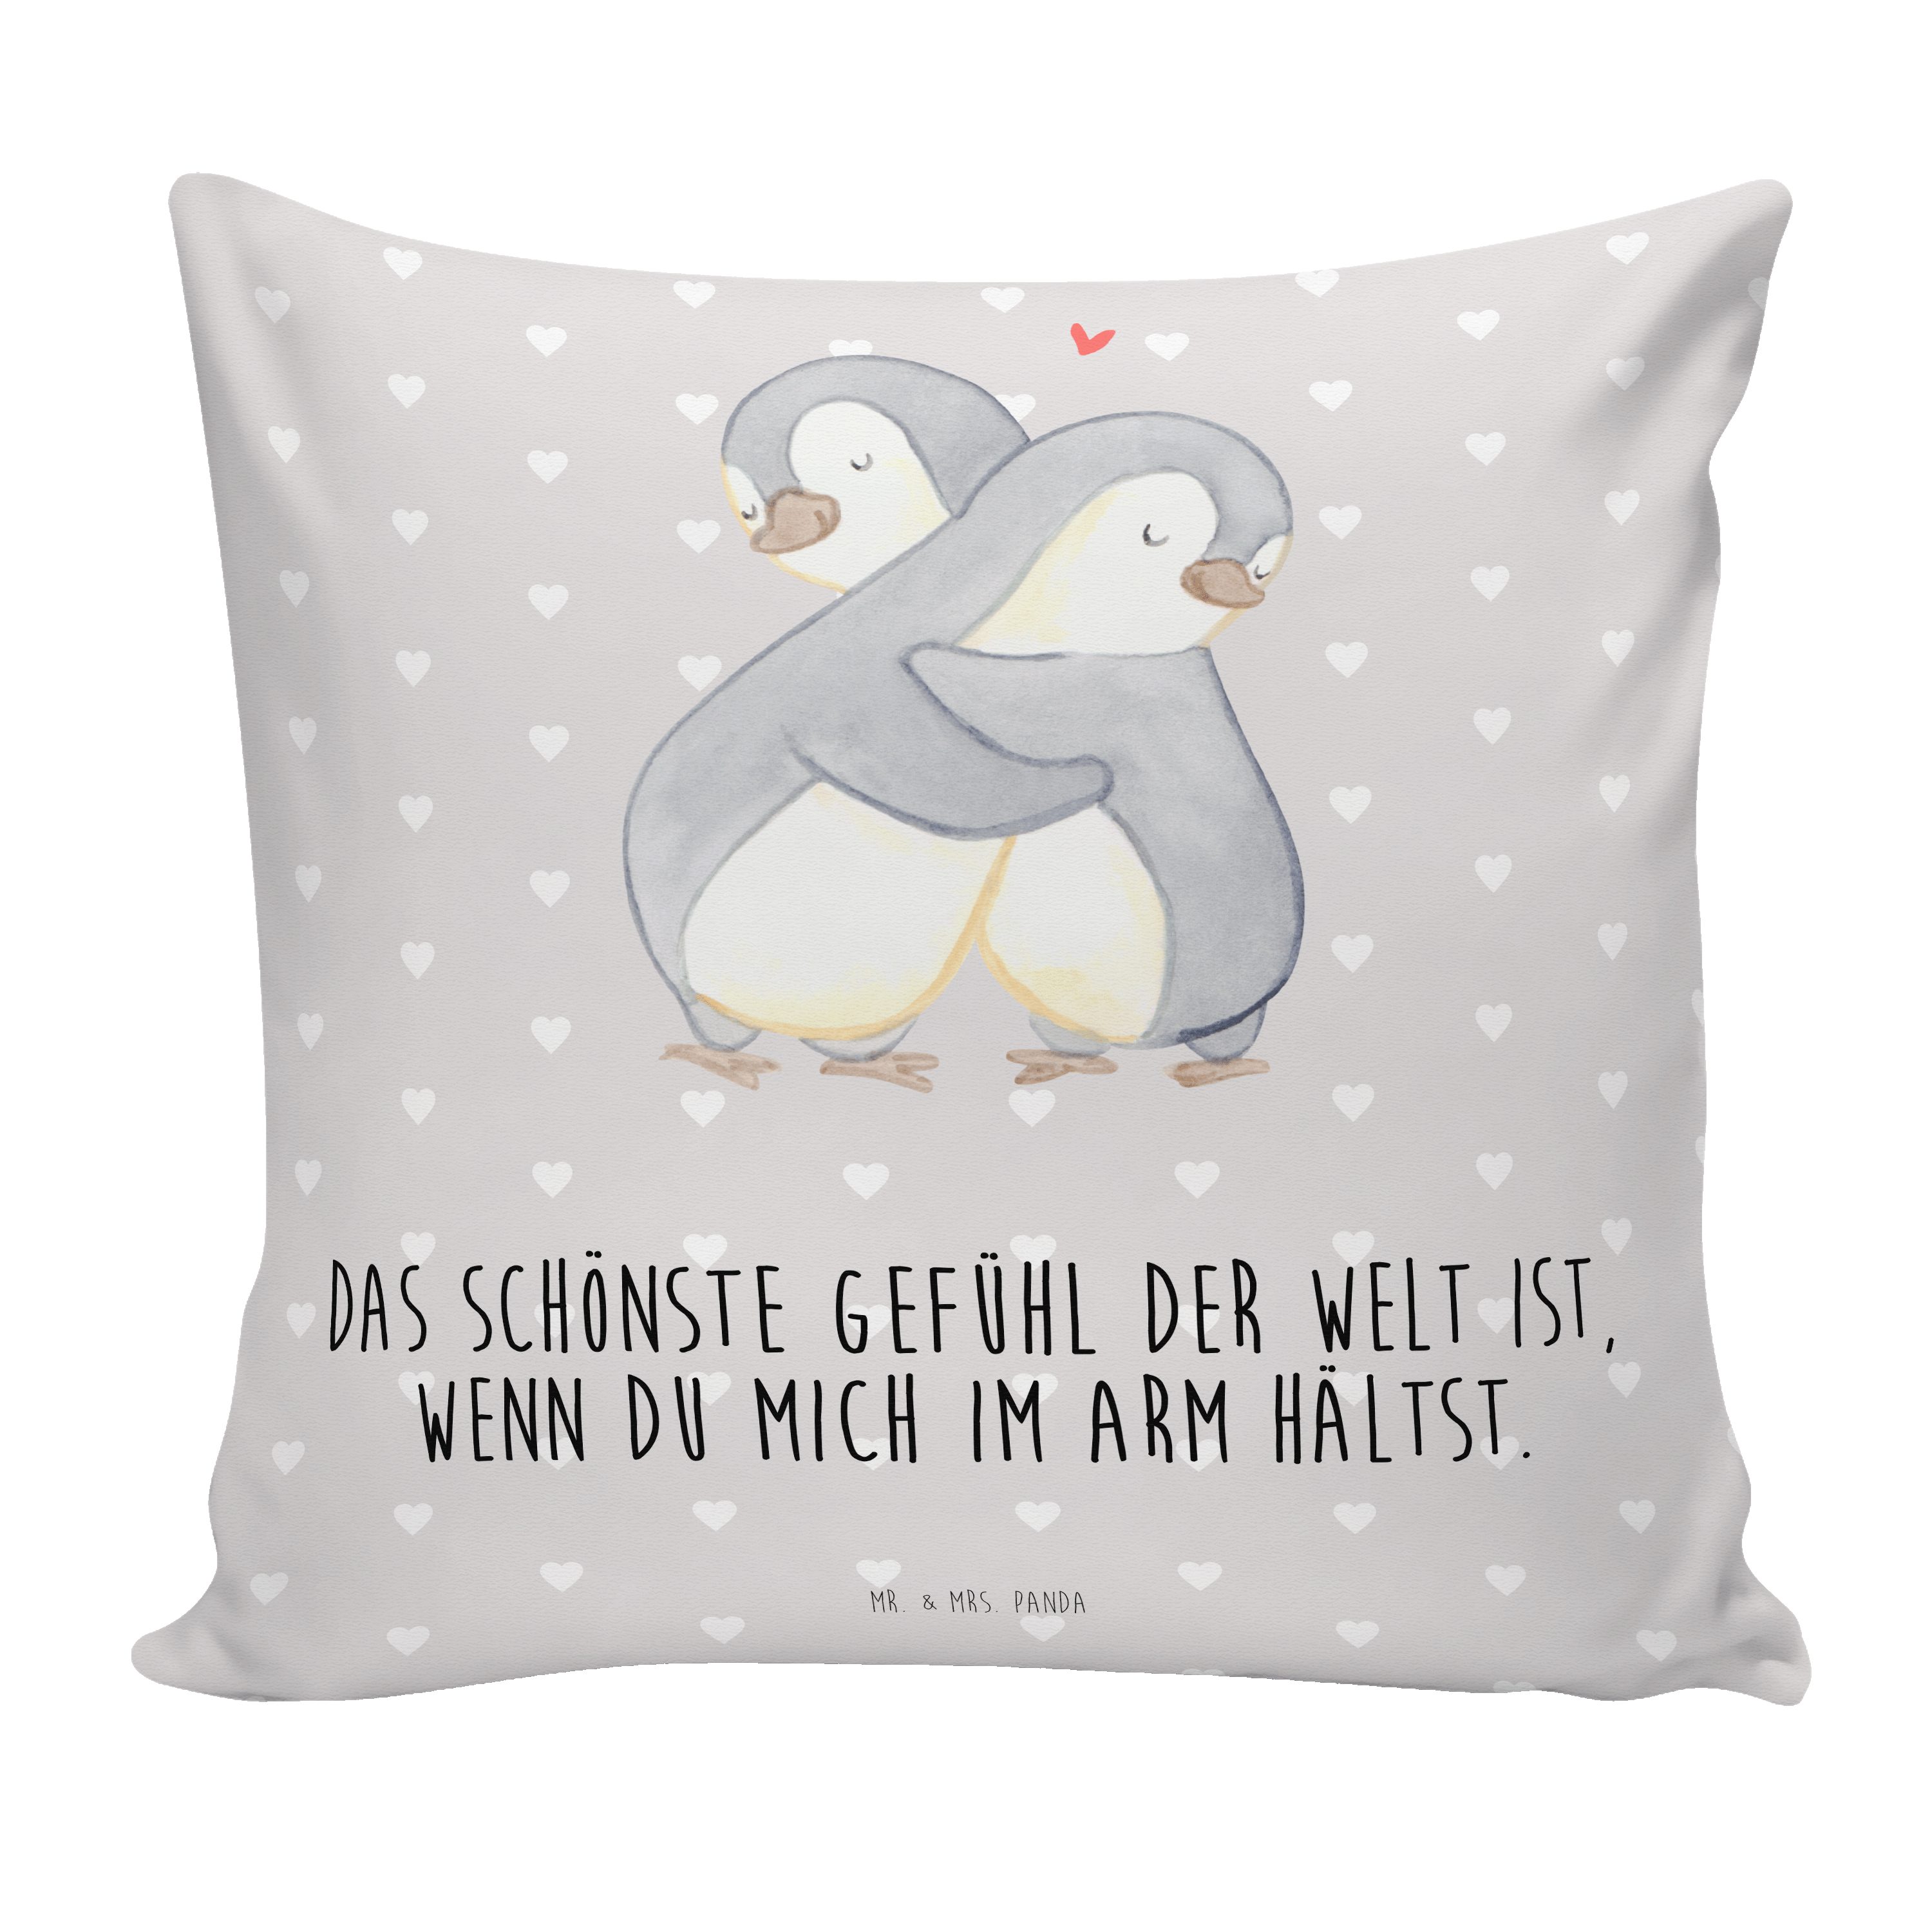 Mr. & Mrs. Panda Dekokissen Pinguine Kuscheln - Grau Pastell - Geschenk, Hocheitstag, Freund, Kop